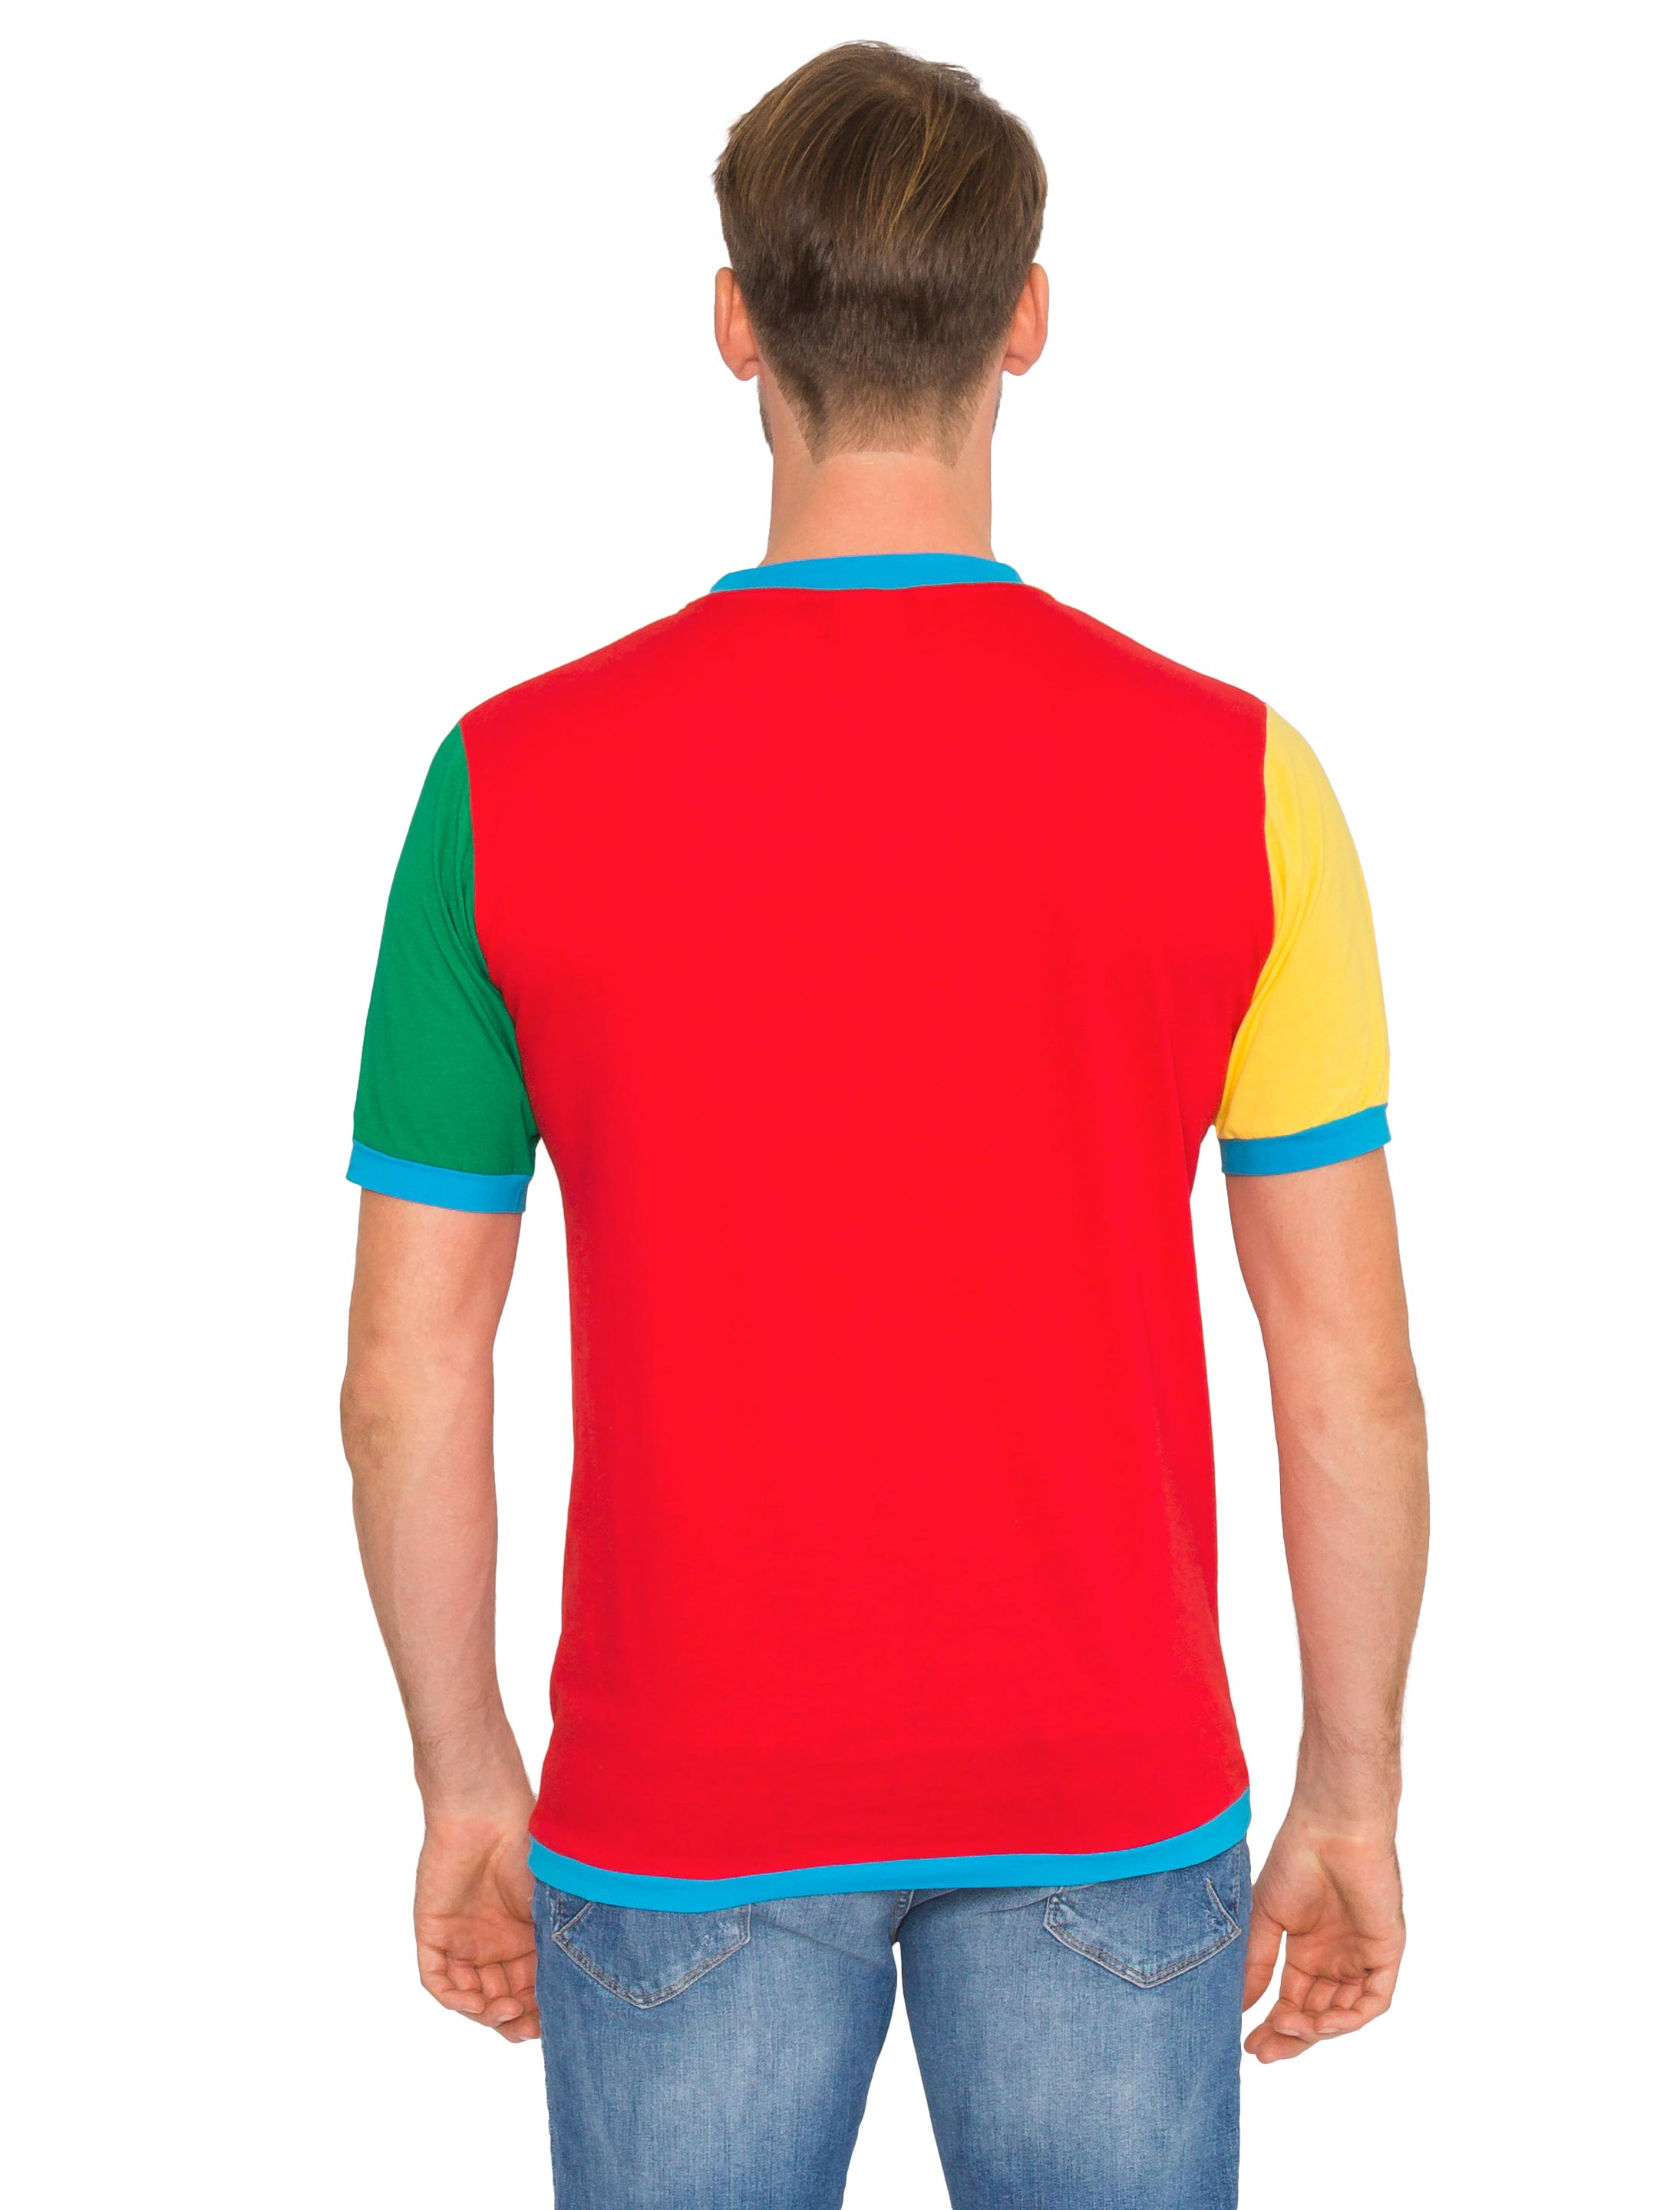 Motto Shirt 2018/2019 mehrfarbig XL